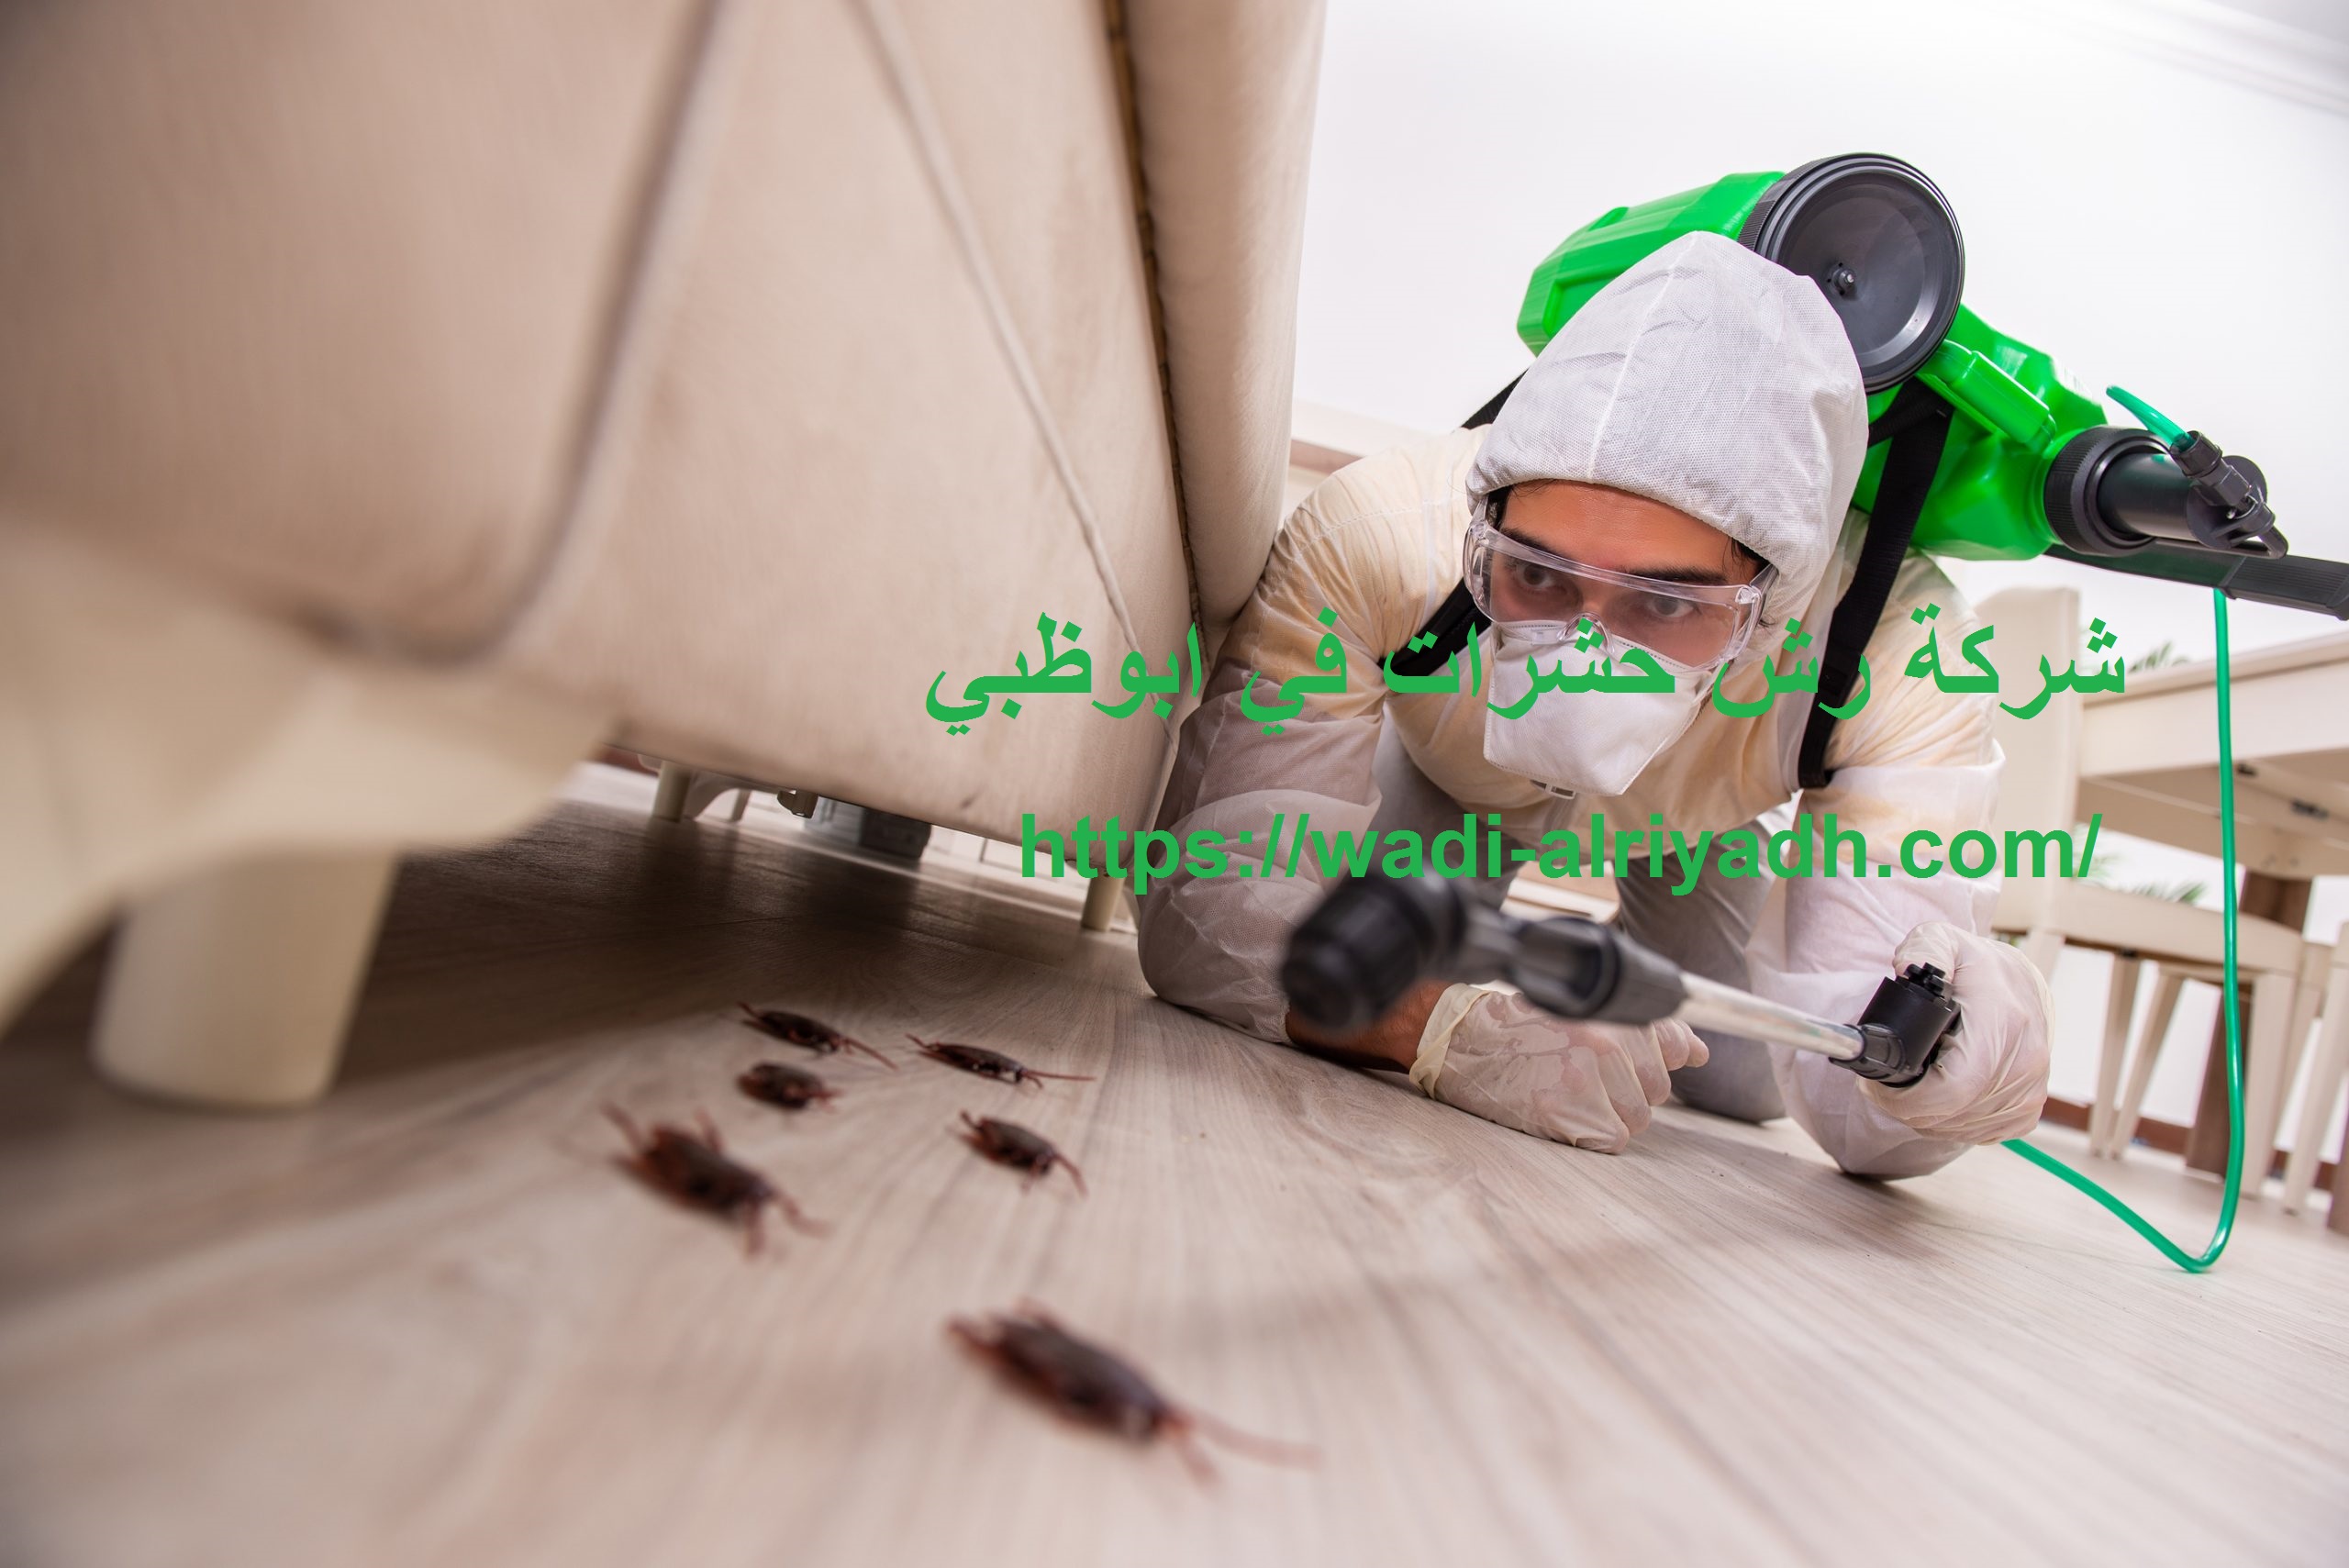 شركة رش حشرات في ابوظبي |0555403225| مكافحة حشرات